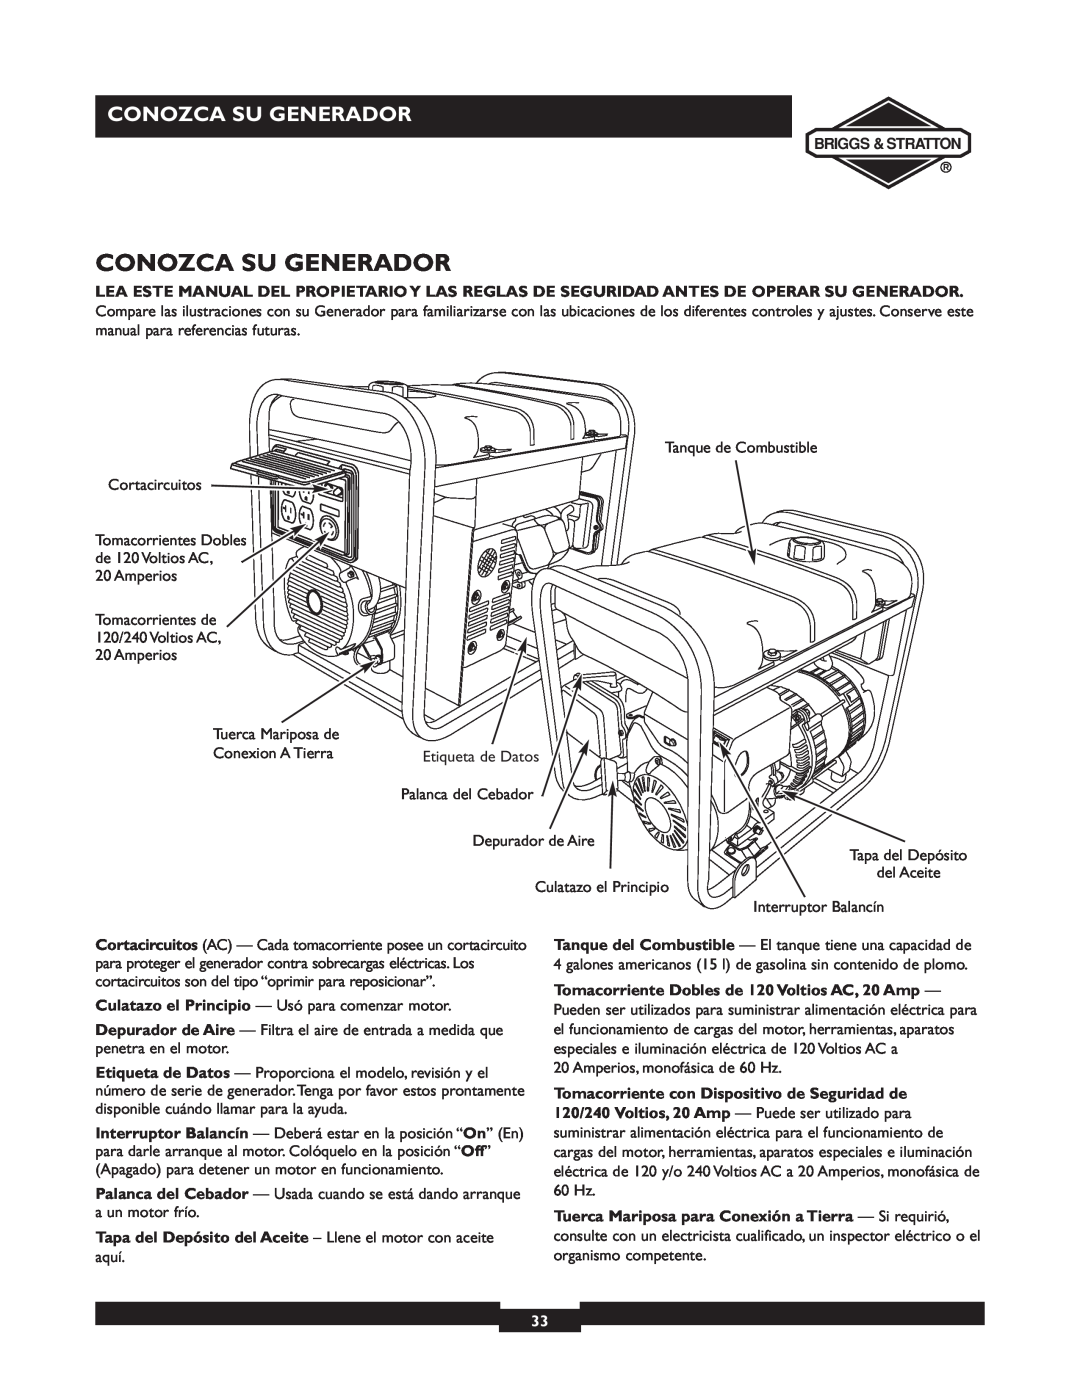 Briggs & Stratton 30238 owner manual Conozca Su Generador, Tapa del Depósito del Aceite - Llene el motor con aceite 